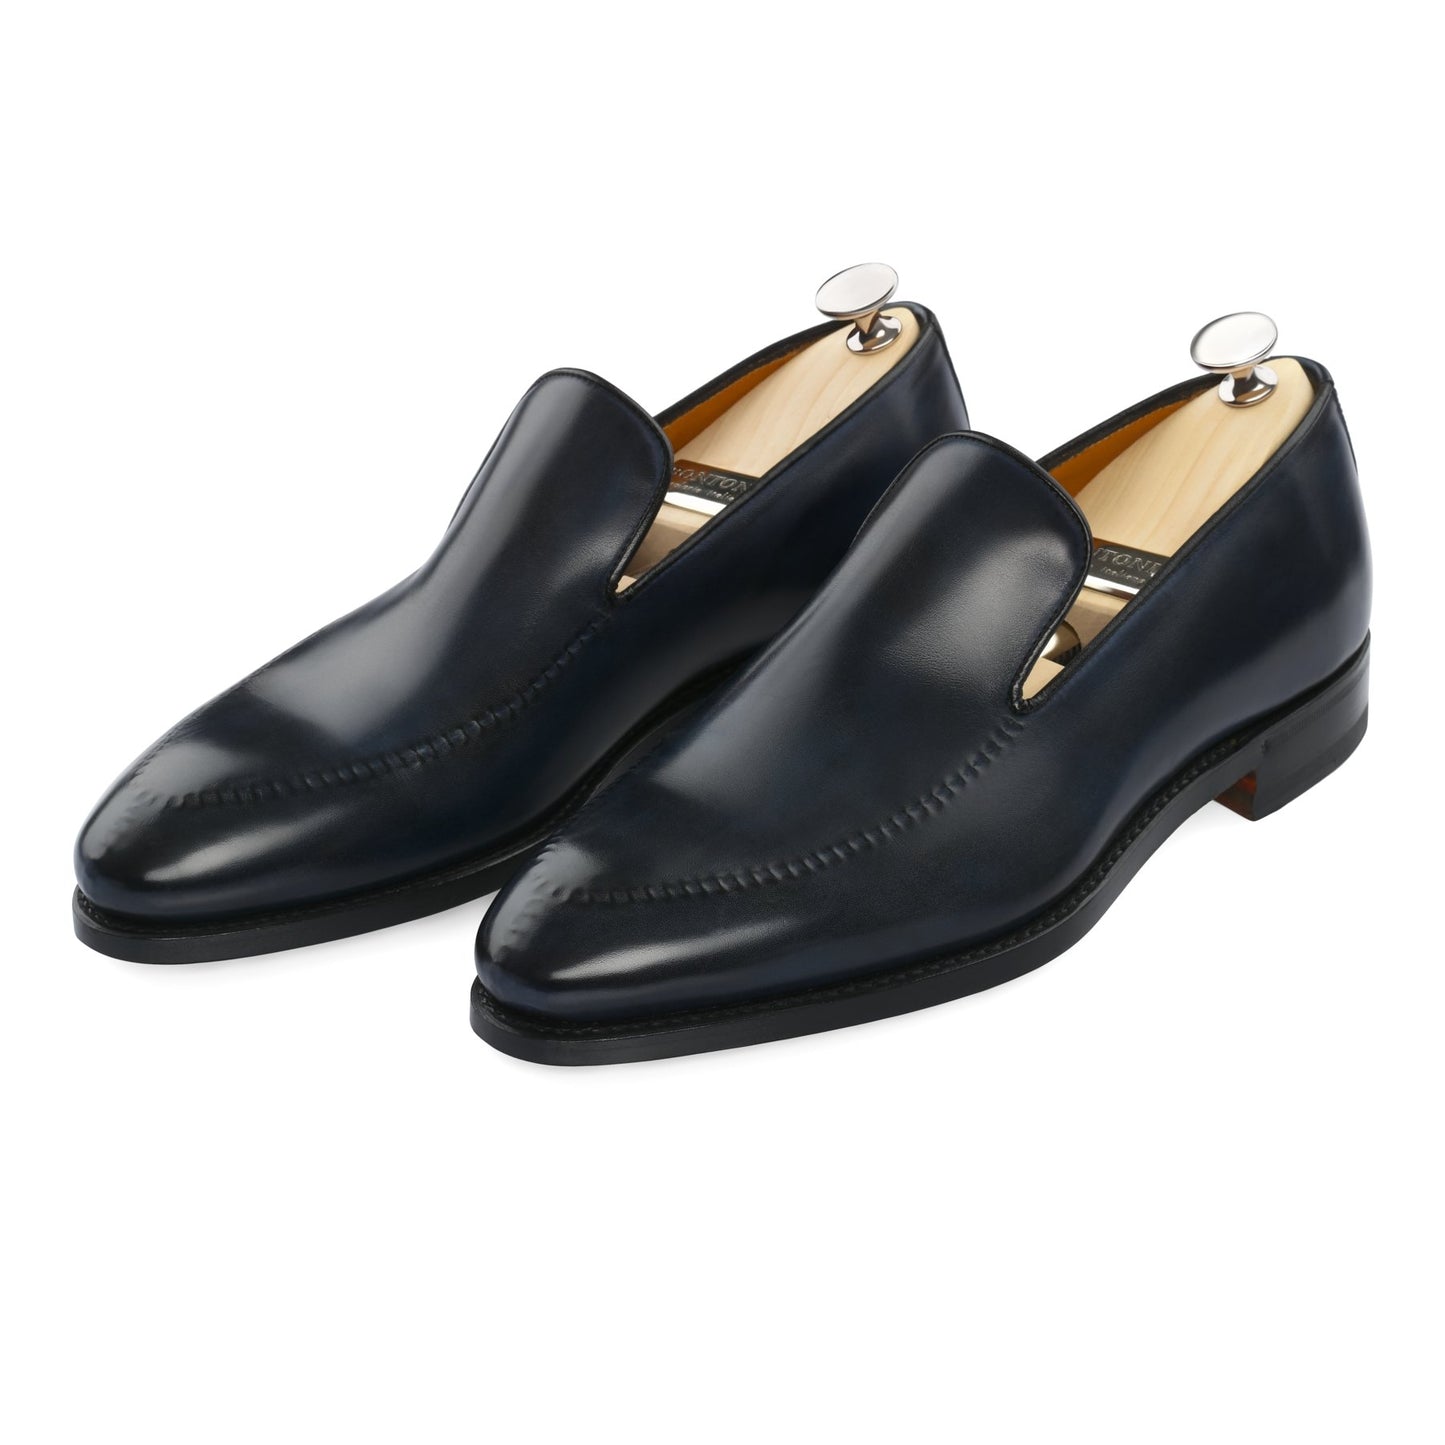 Kensington Loafer - Shoes